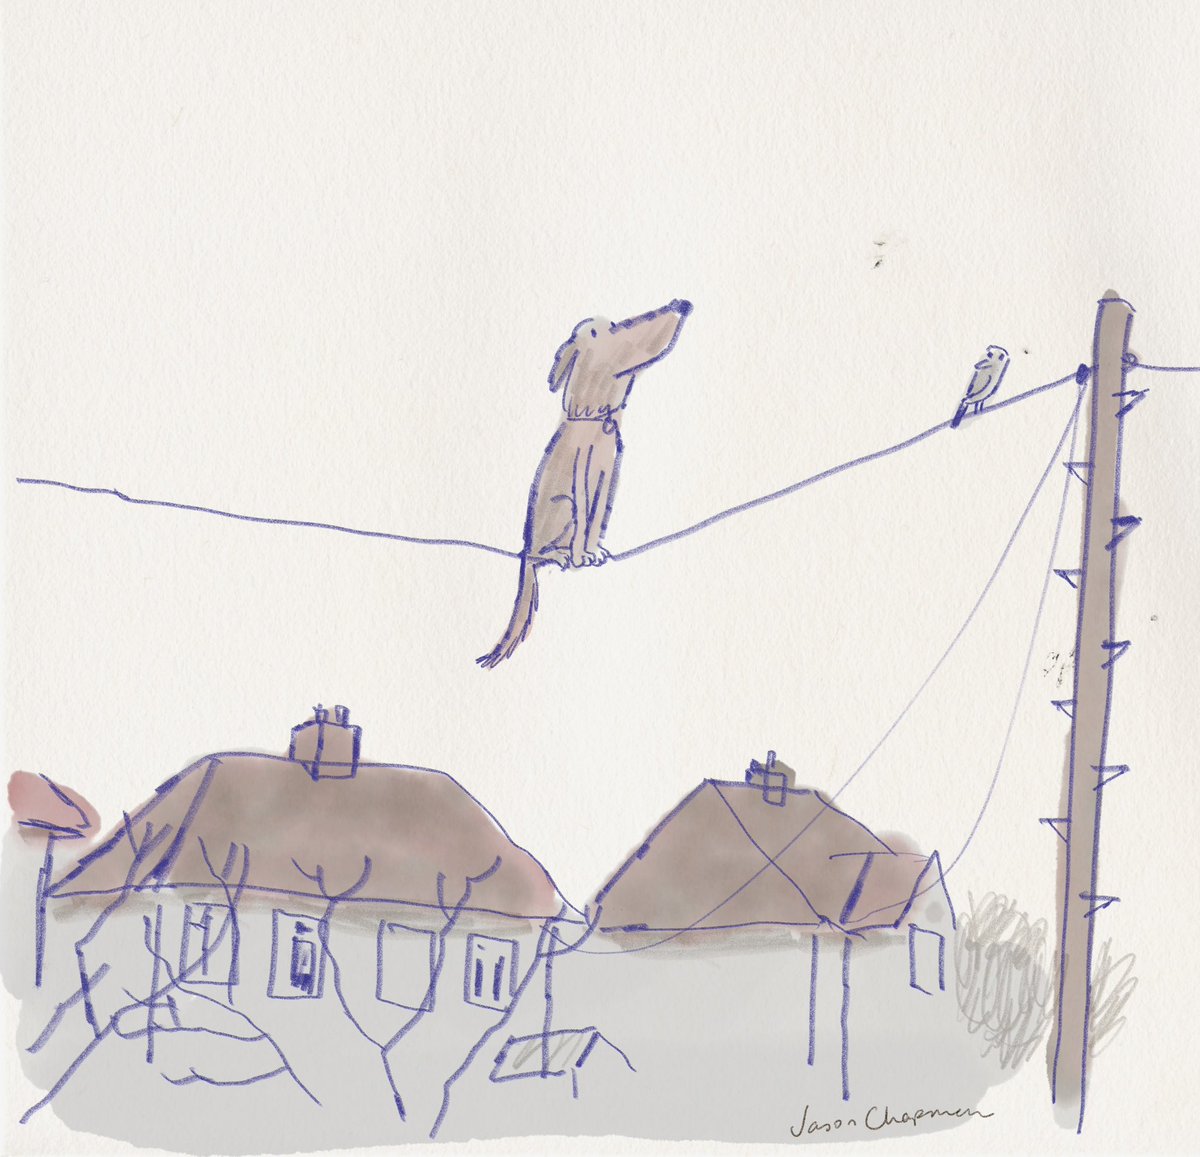 Dog on a wire.

#observationaldrawing #kidlitart #childrensbooks #picturebookillustration #illustratorsontwitter #dog #dogillustration #sketch #drawing #streetart #dogonawire #dogsoftwitter